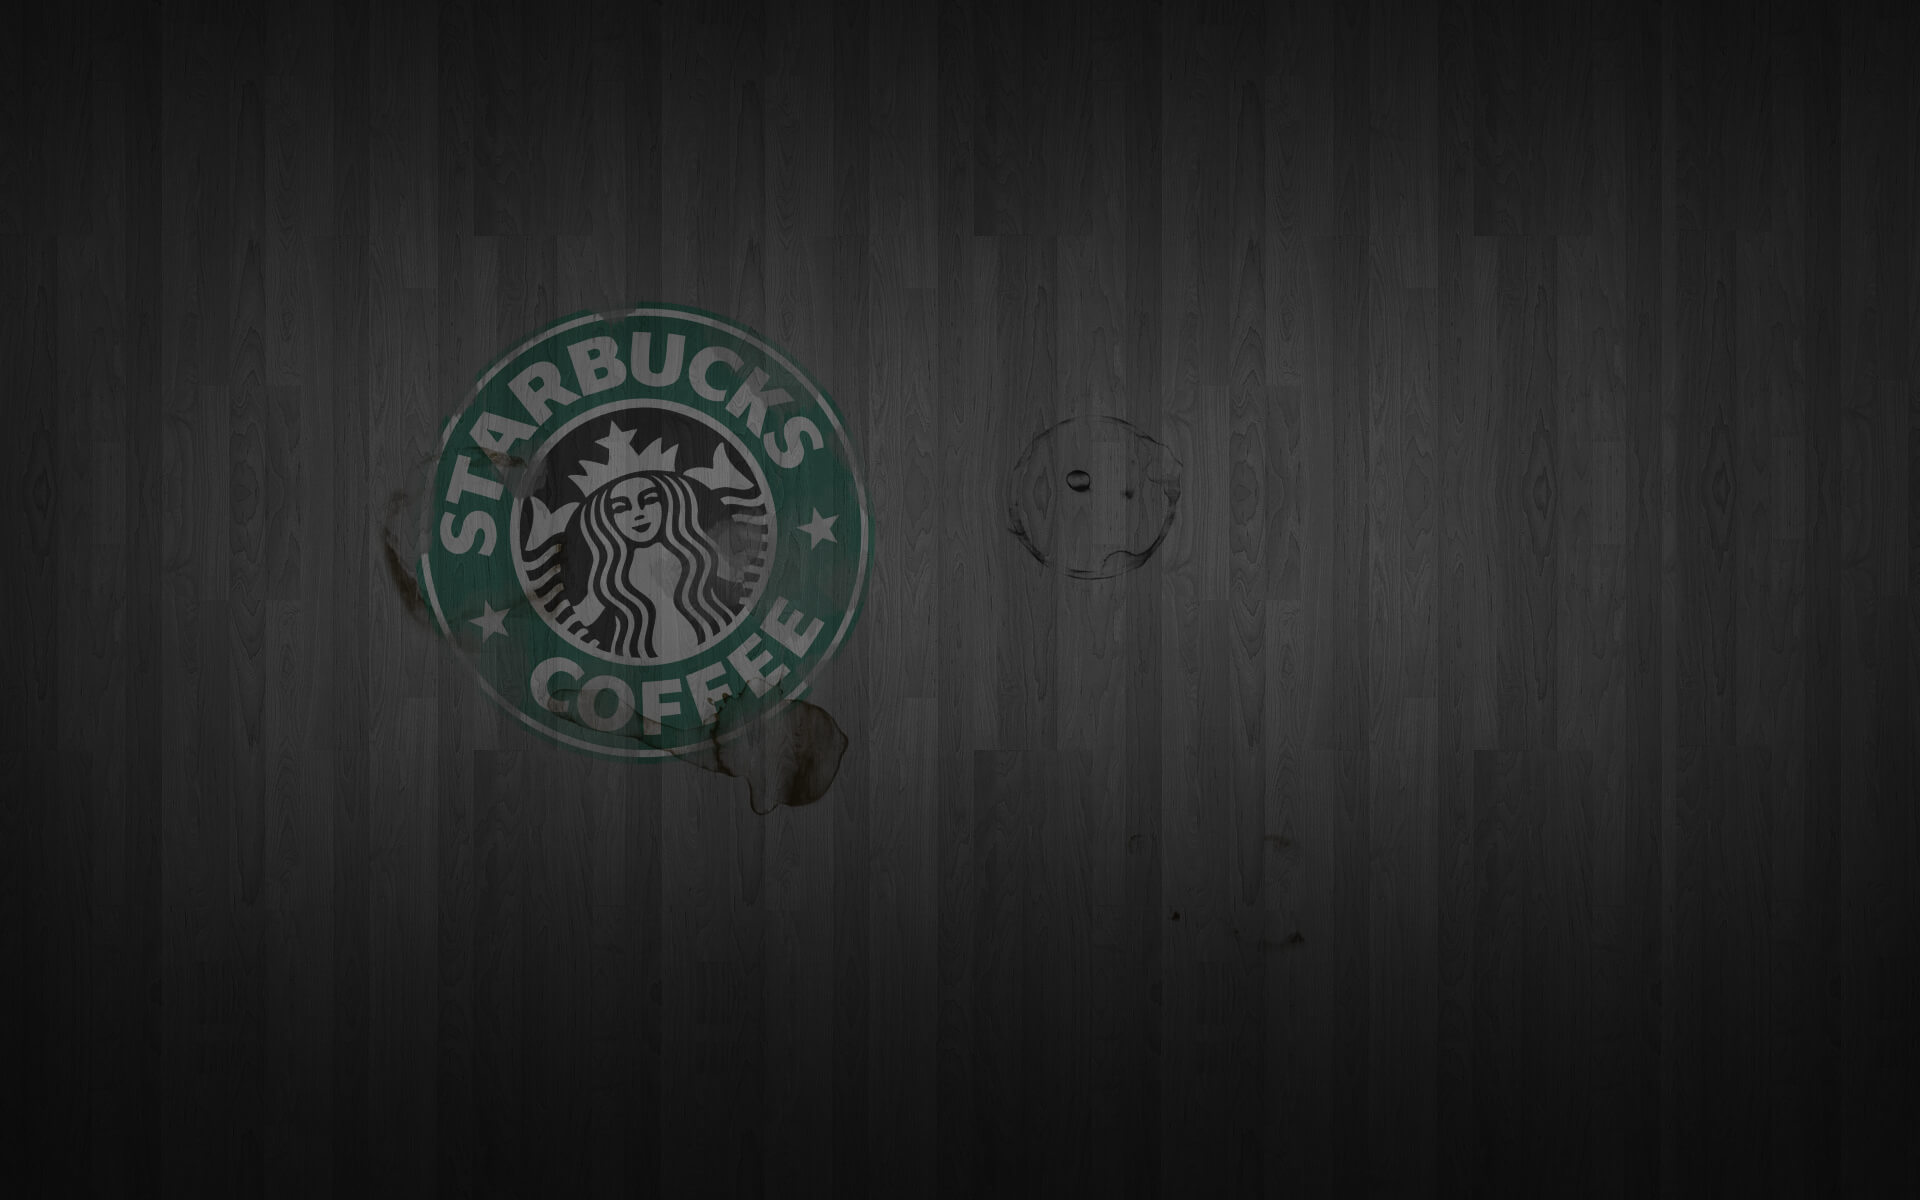 Starbucks Art Backgrounds For Powerpoint Templates – Ppt In Starbucks Powerpoint Template